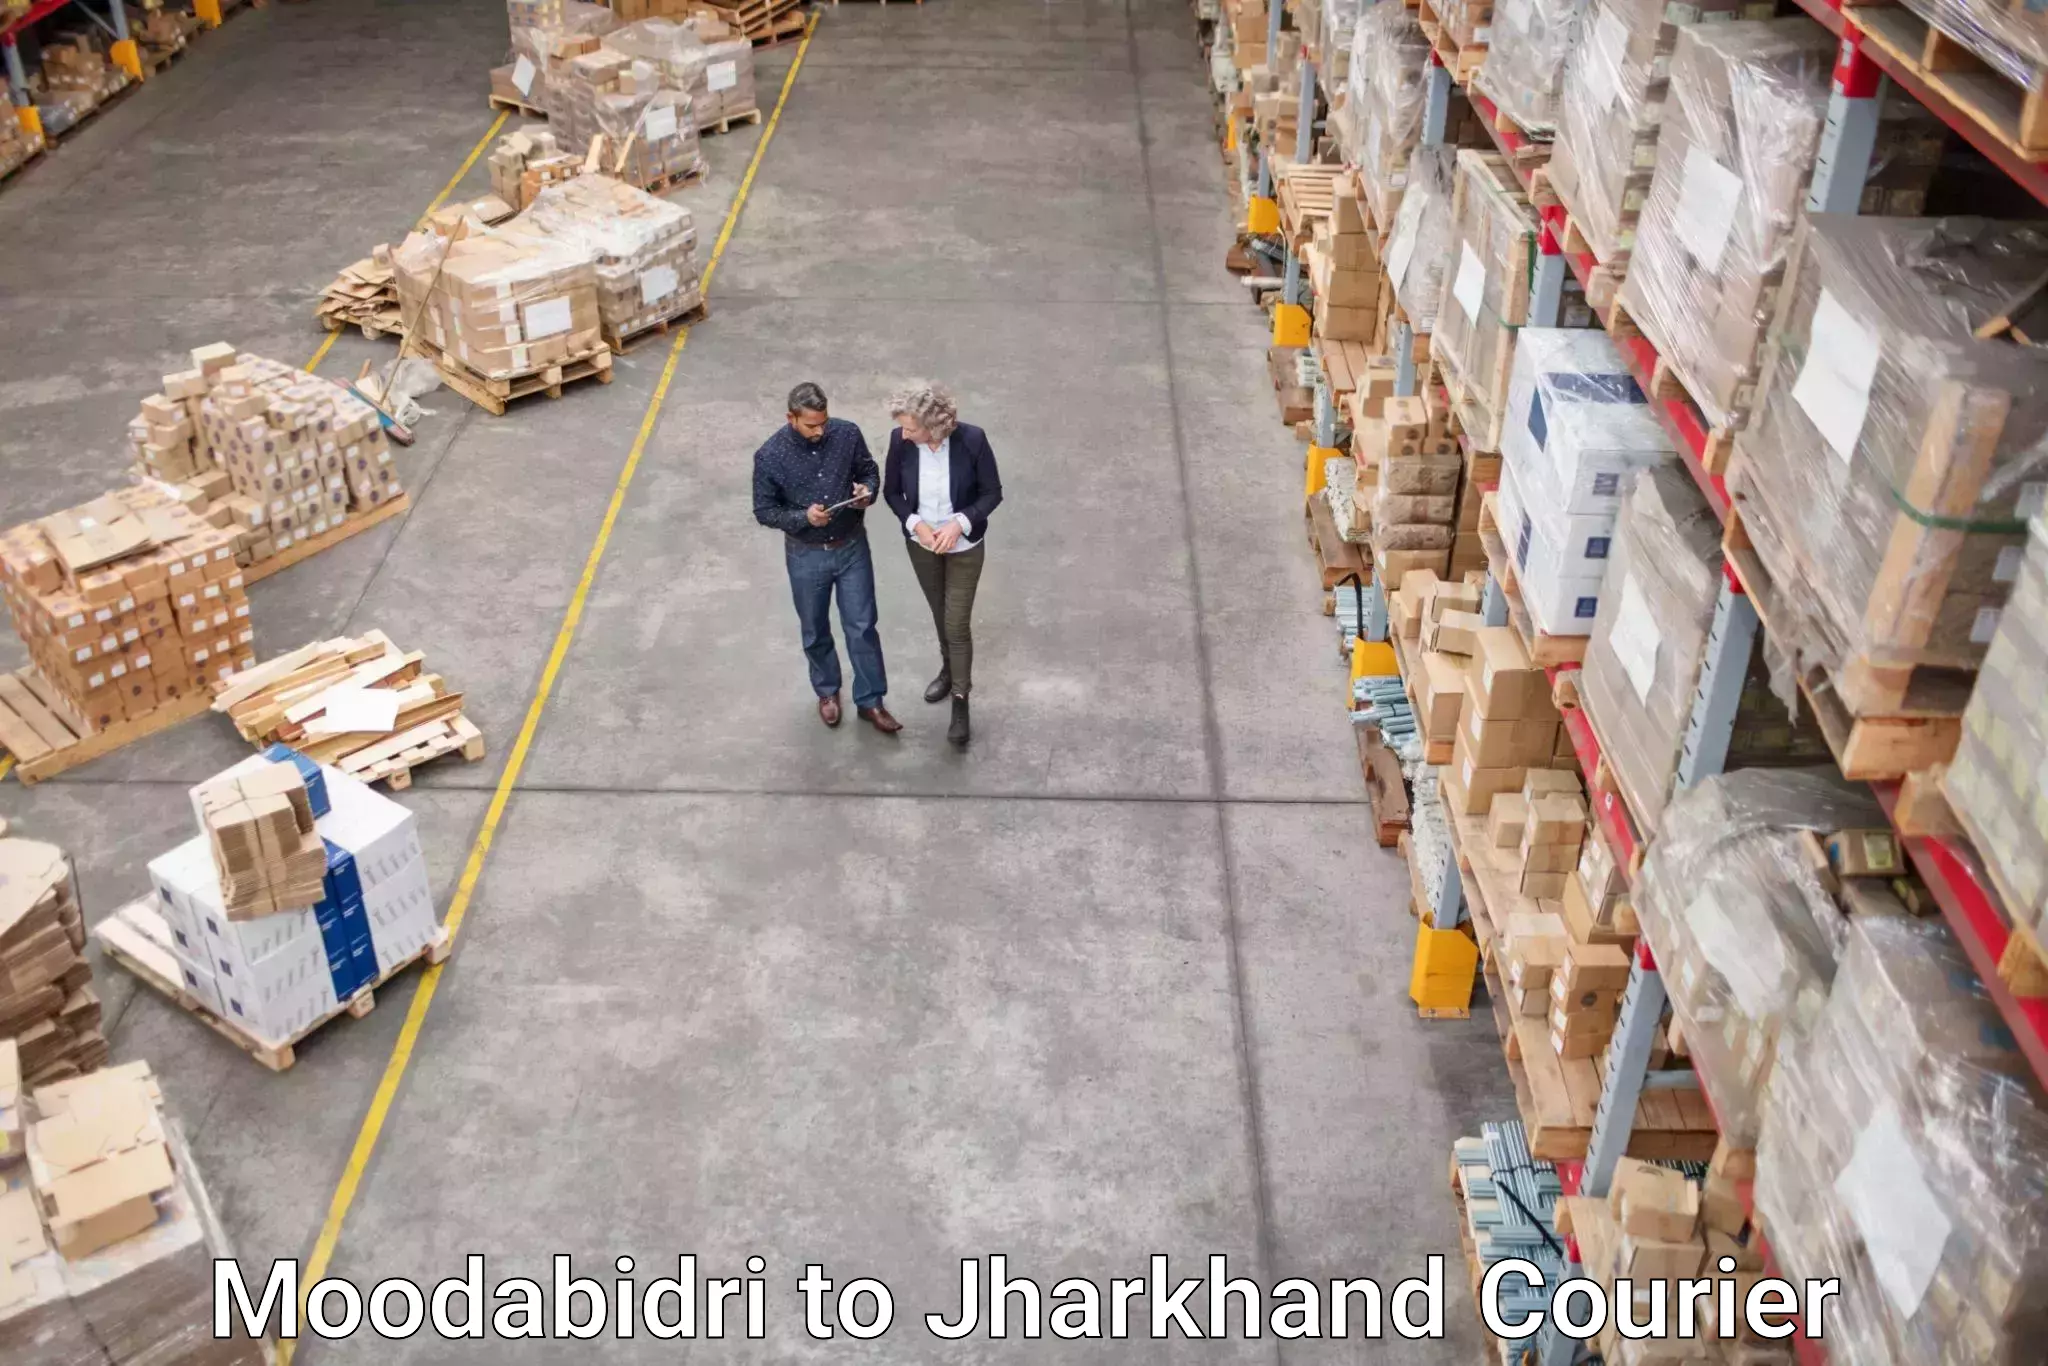 Punctual parcel services Moodabidri to Godda